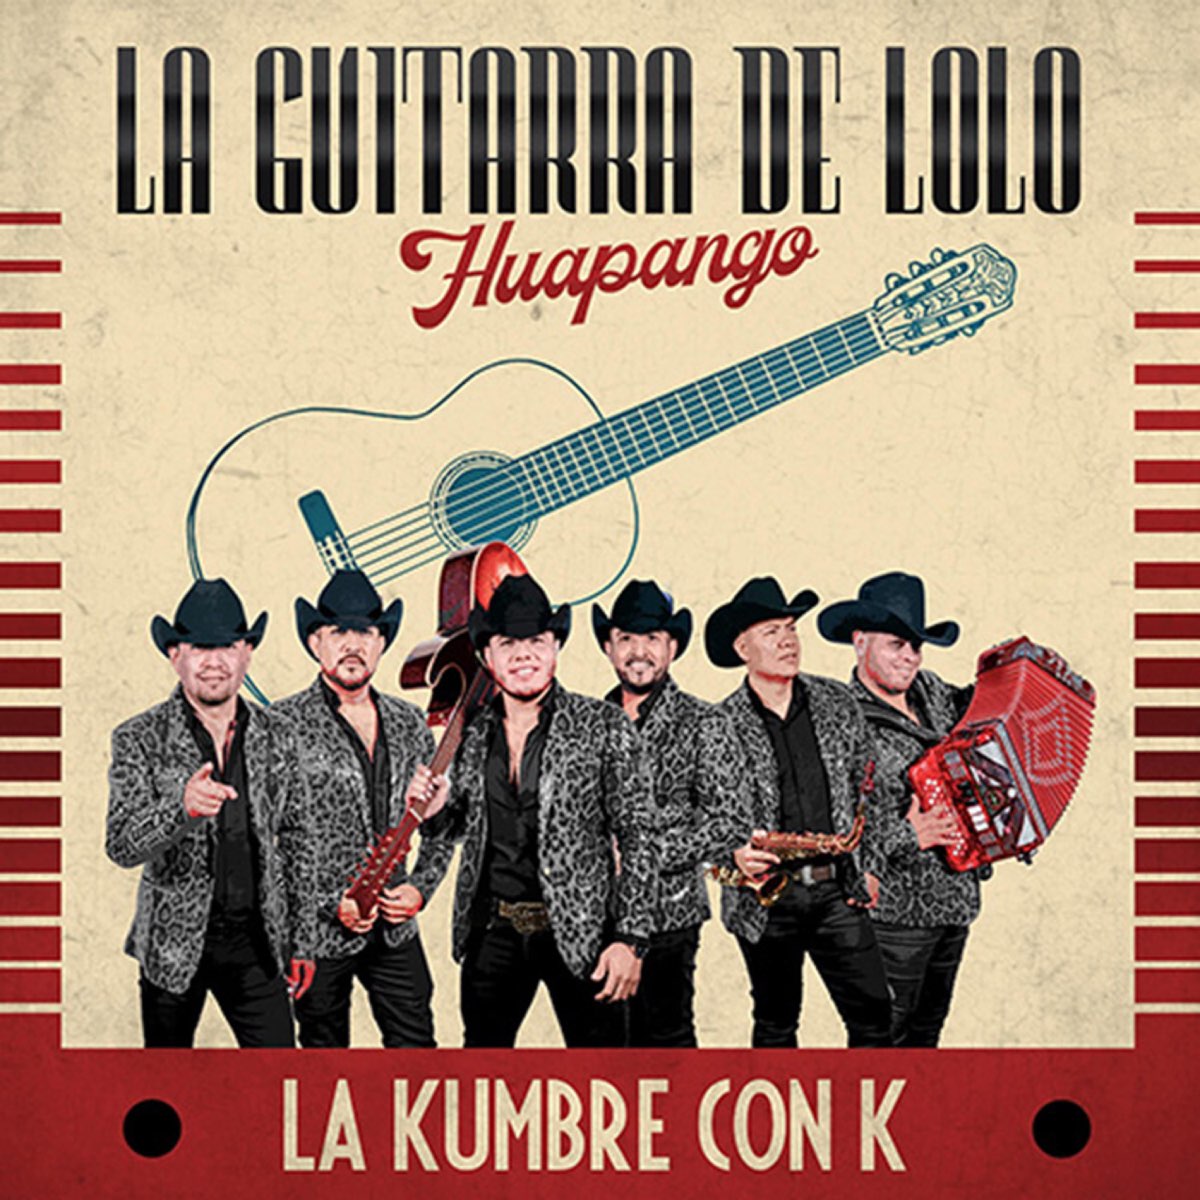 La Guitarra de Lolo (Huapango) - Single de La Kumbre Con Apple